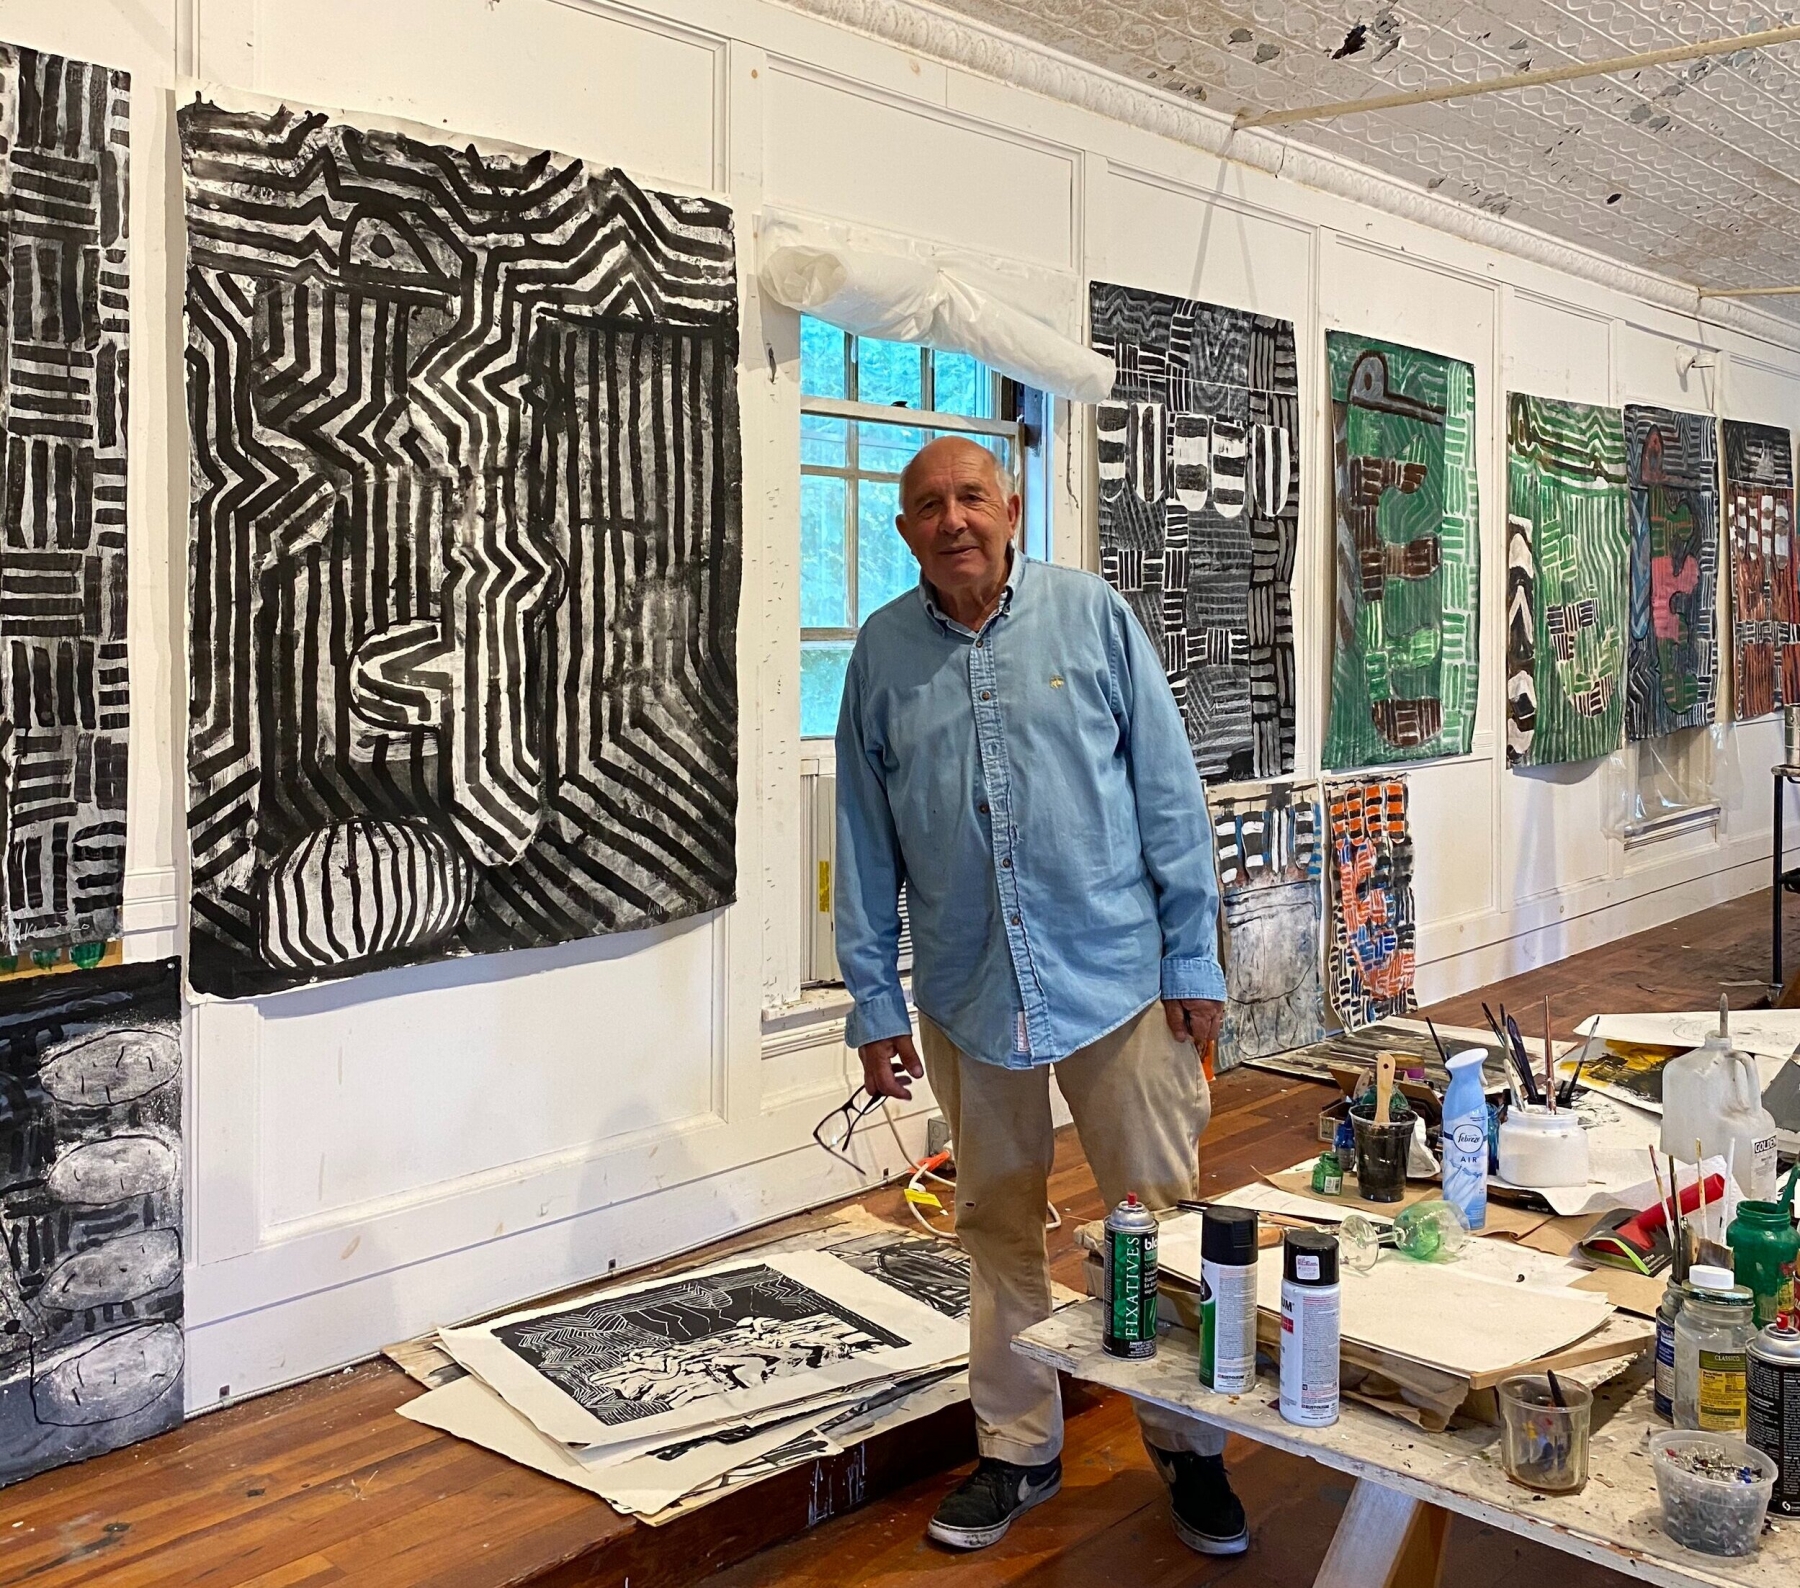 John Walker in his studio, August 2020